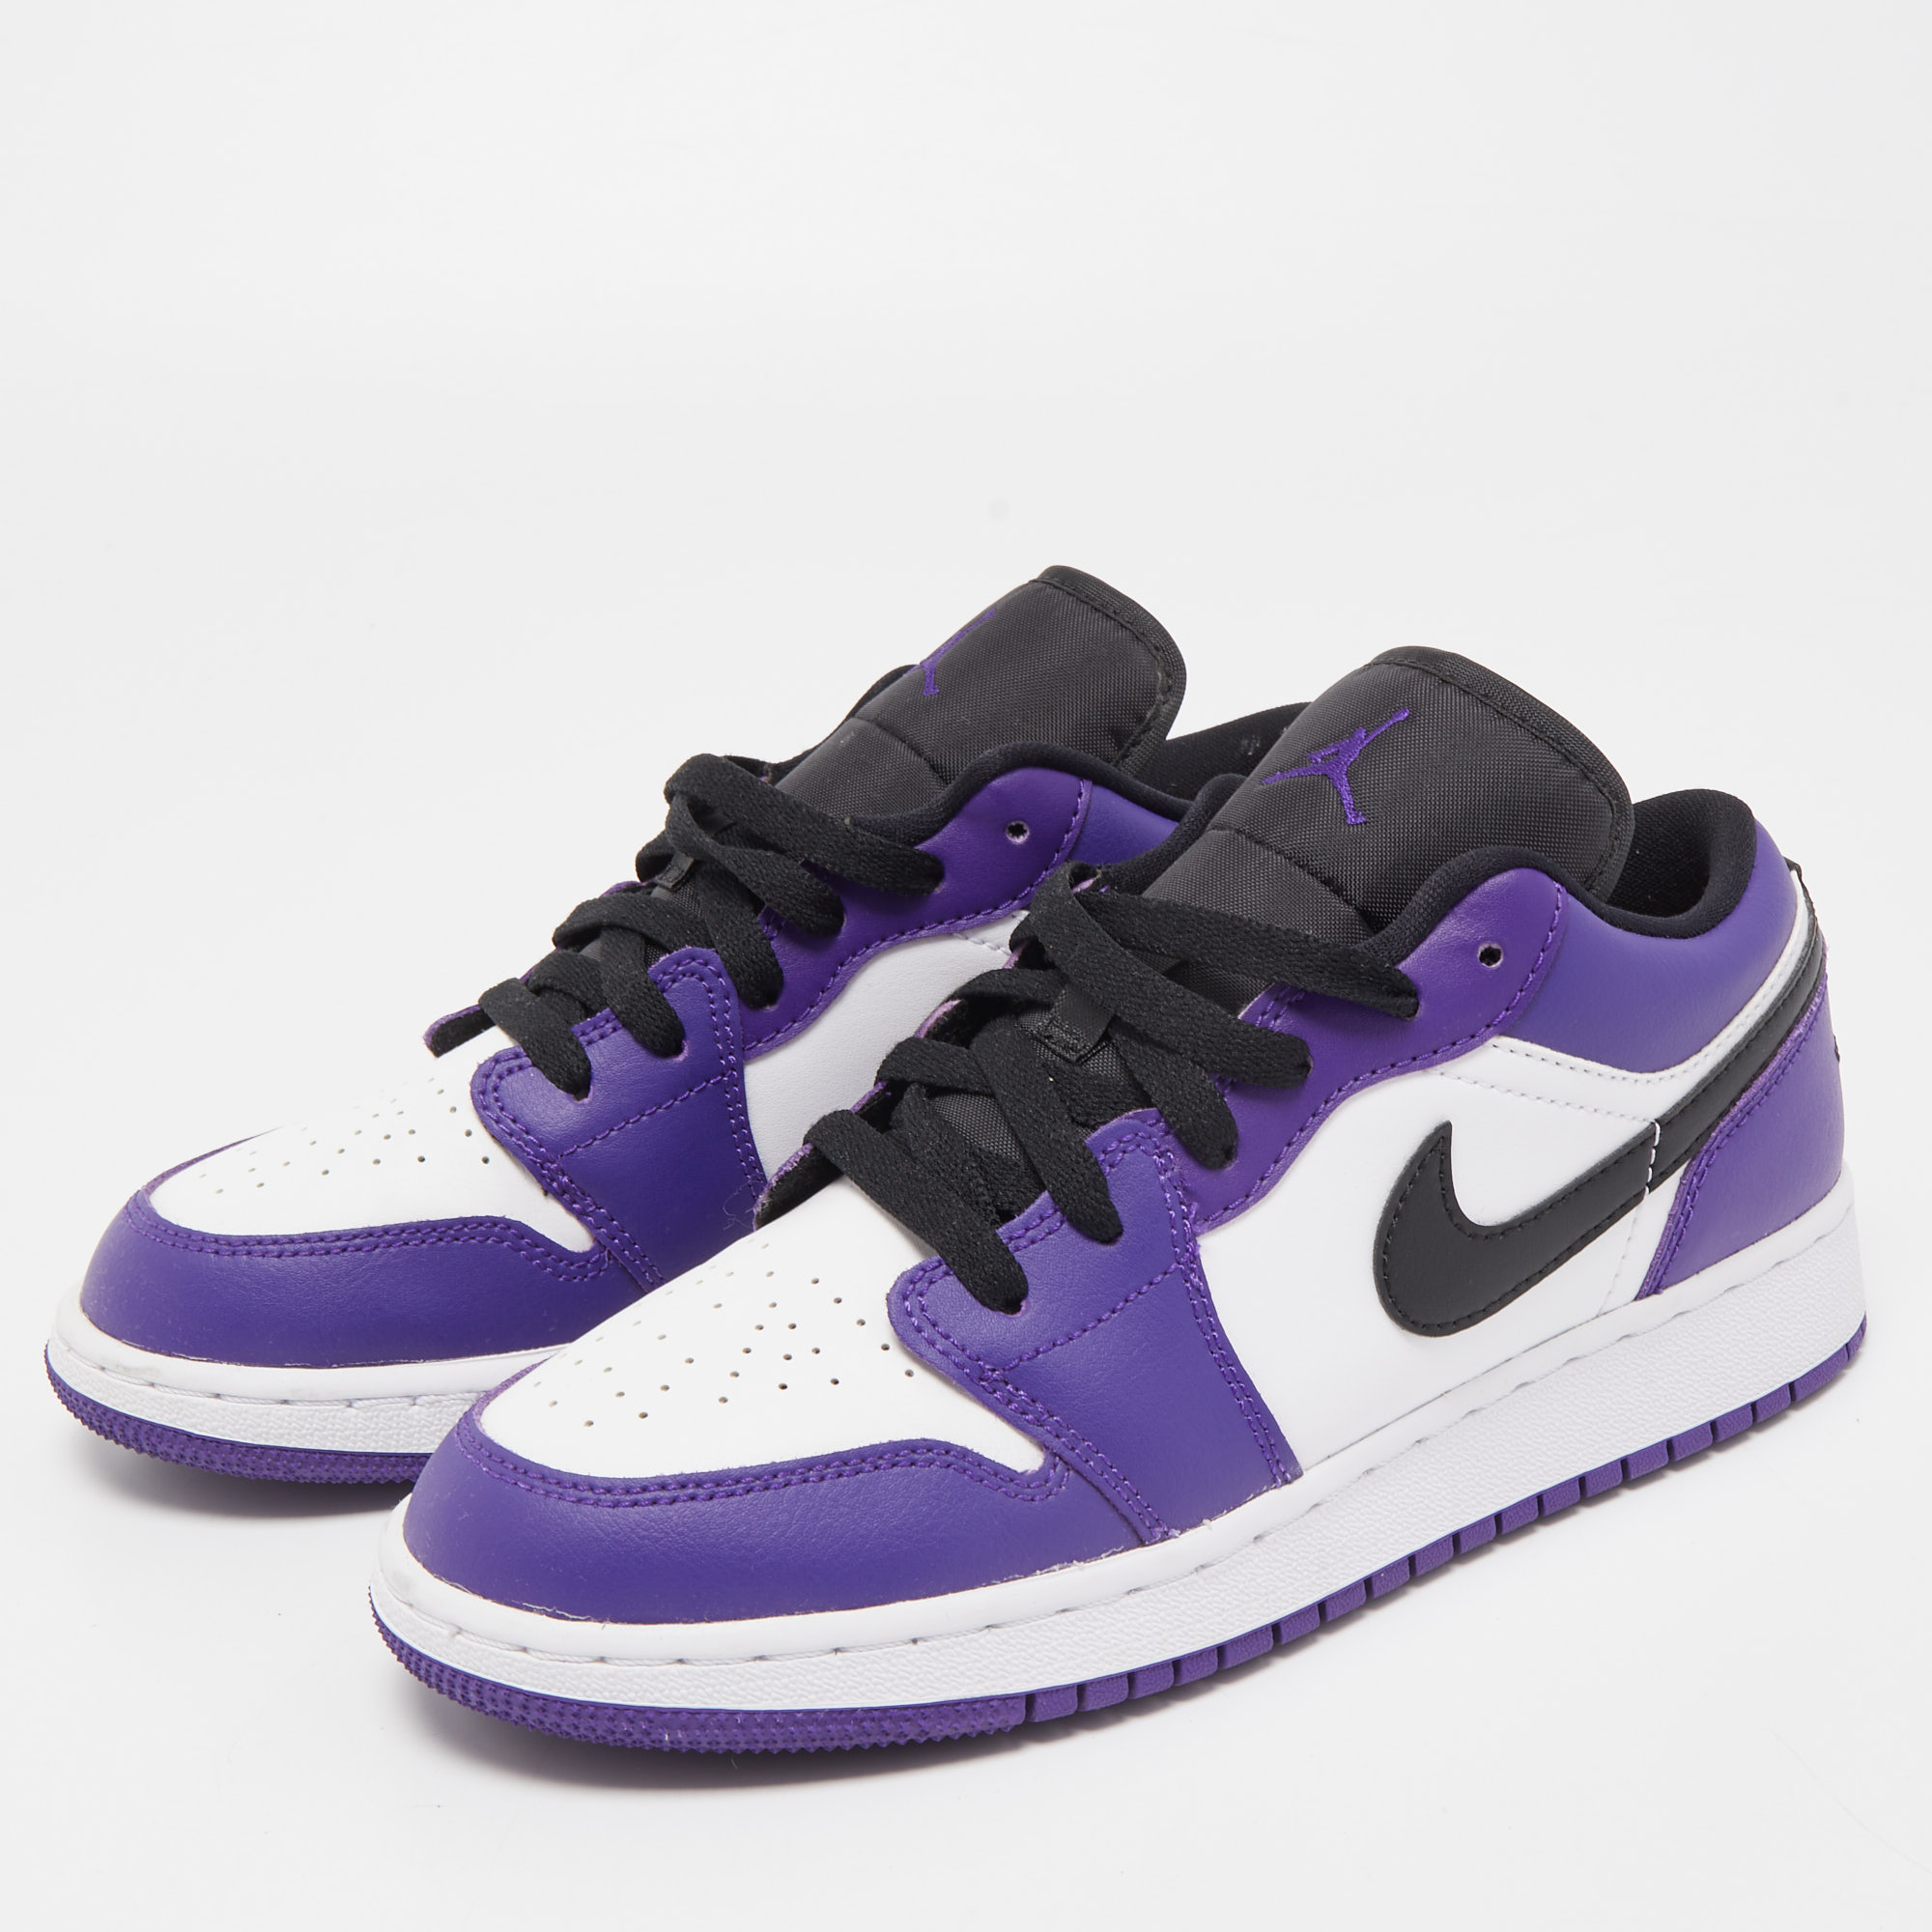 

Air Jordans Tricolor Leather Air Jordan 1 Court Purple Sneakers Size